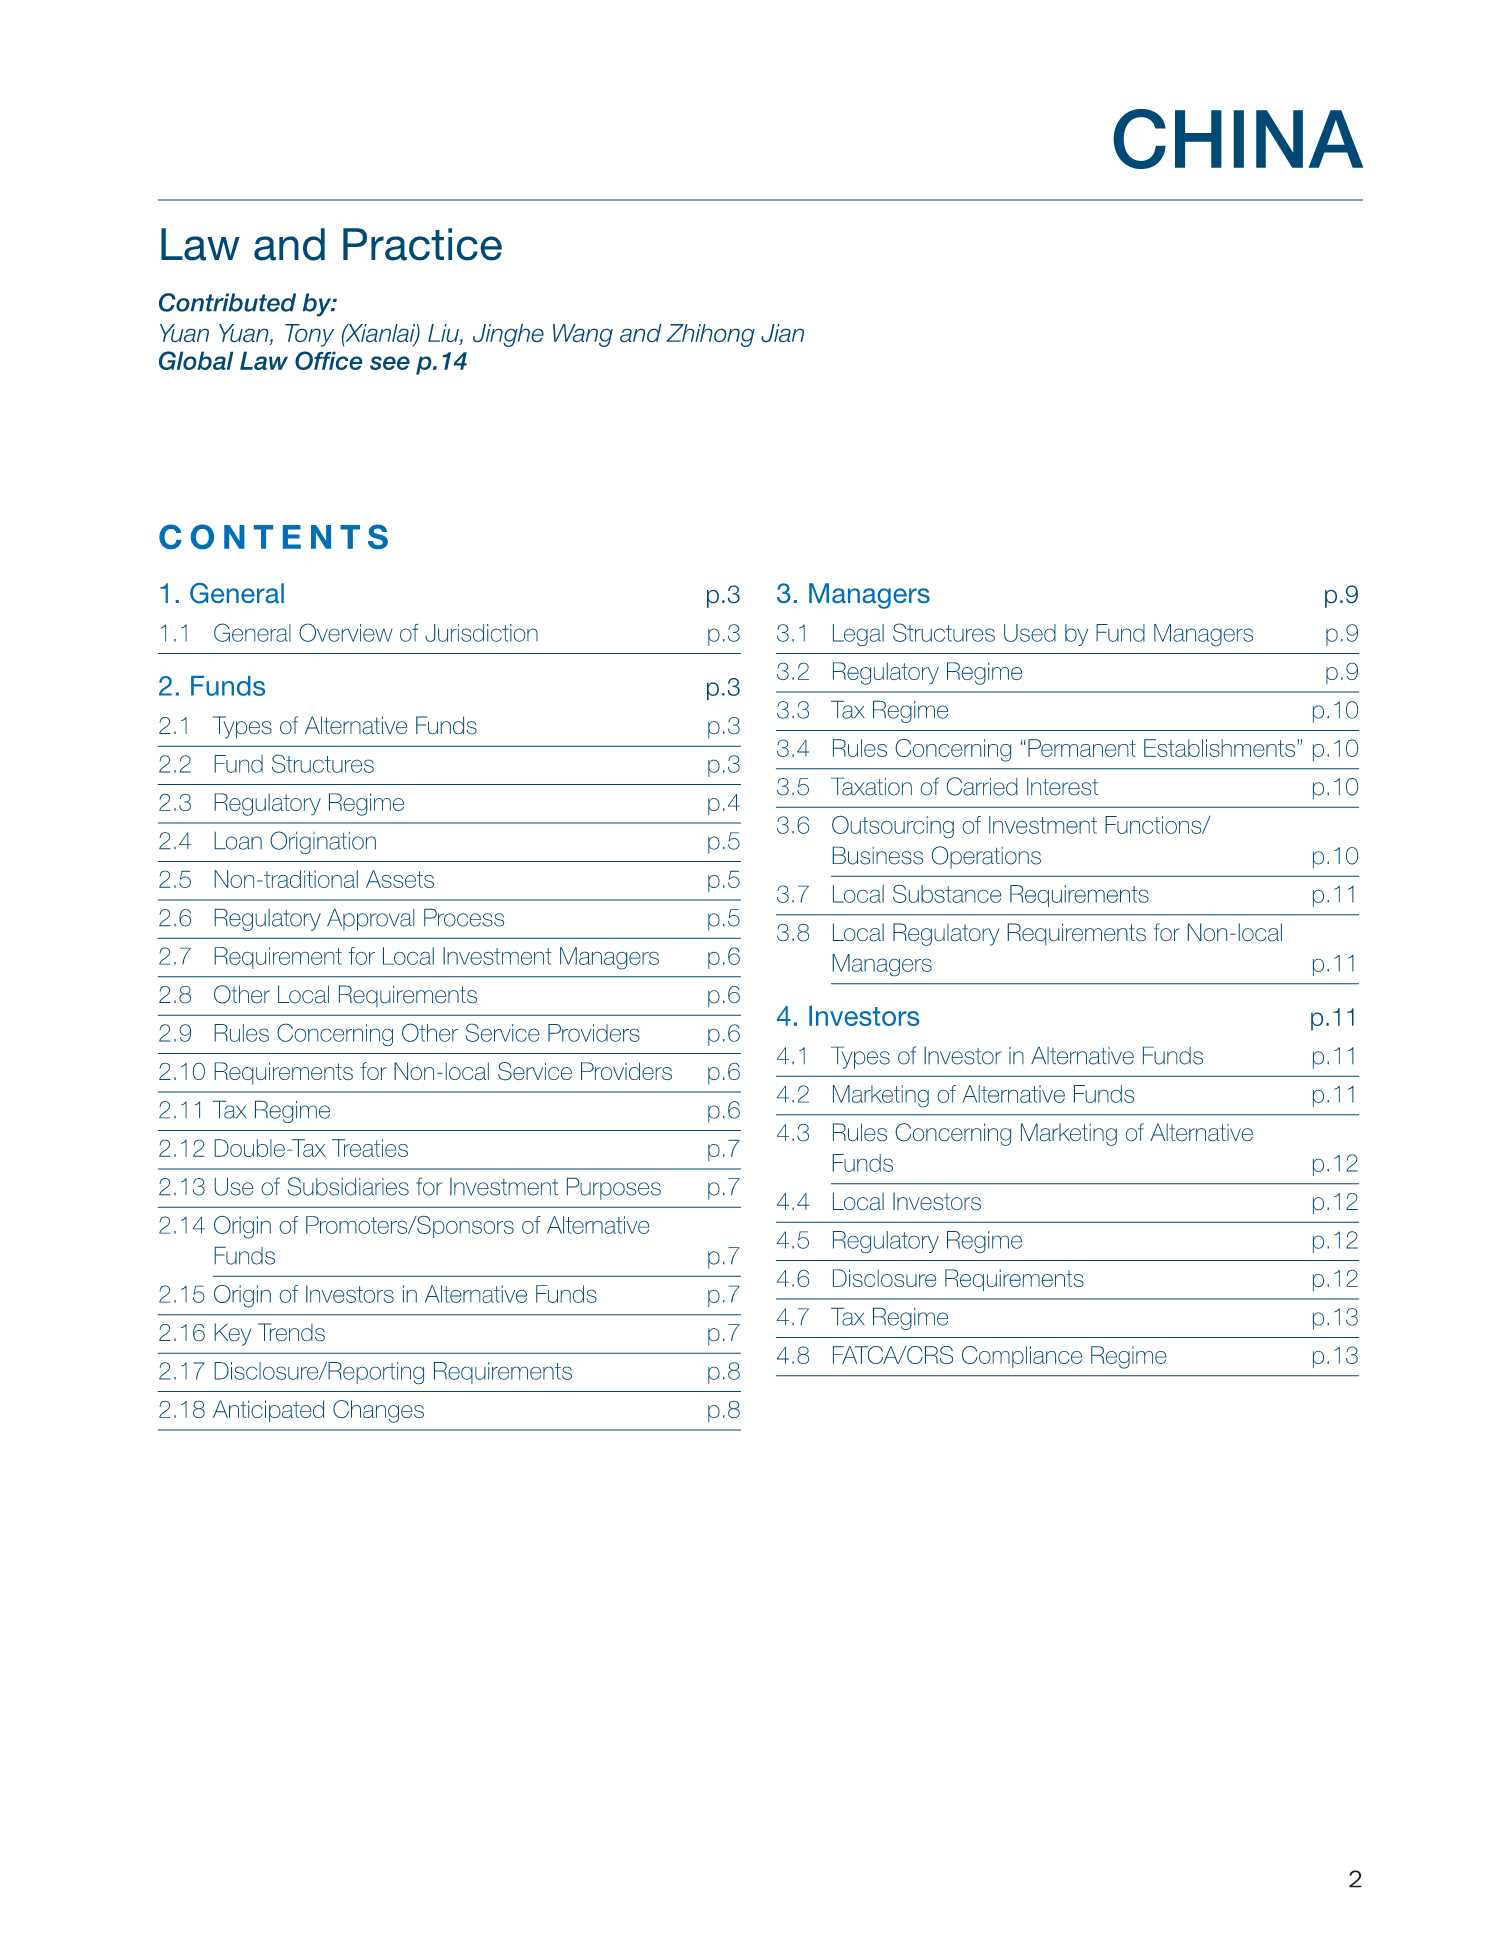 环球律师事务所-另类基金法律与实践（2021版）之中国篇（英）-2021.11-15页